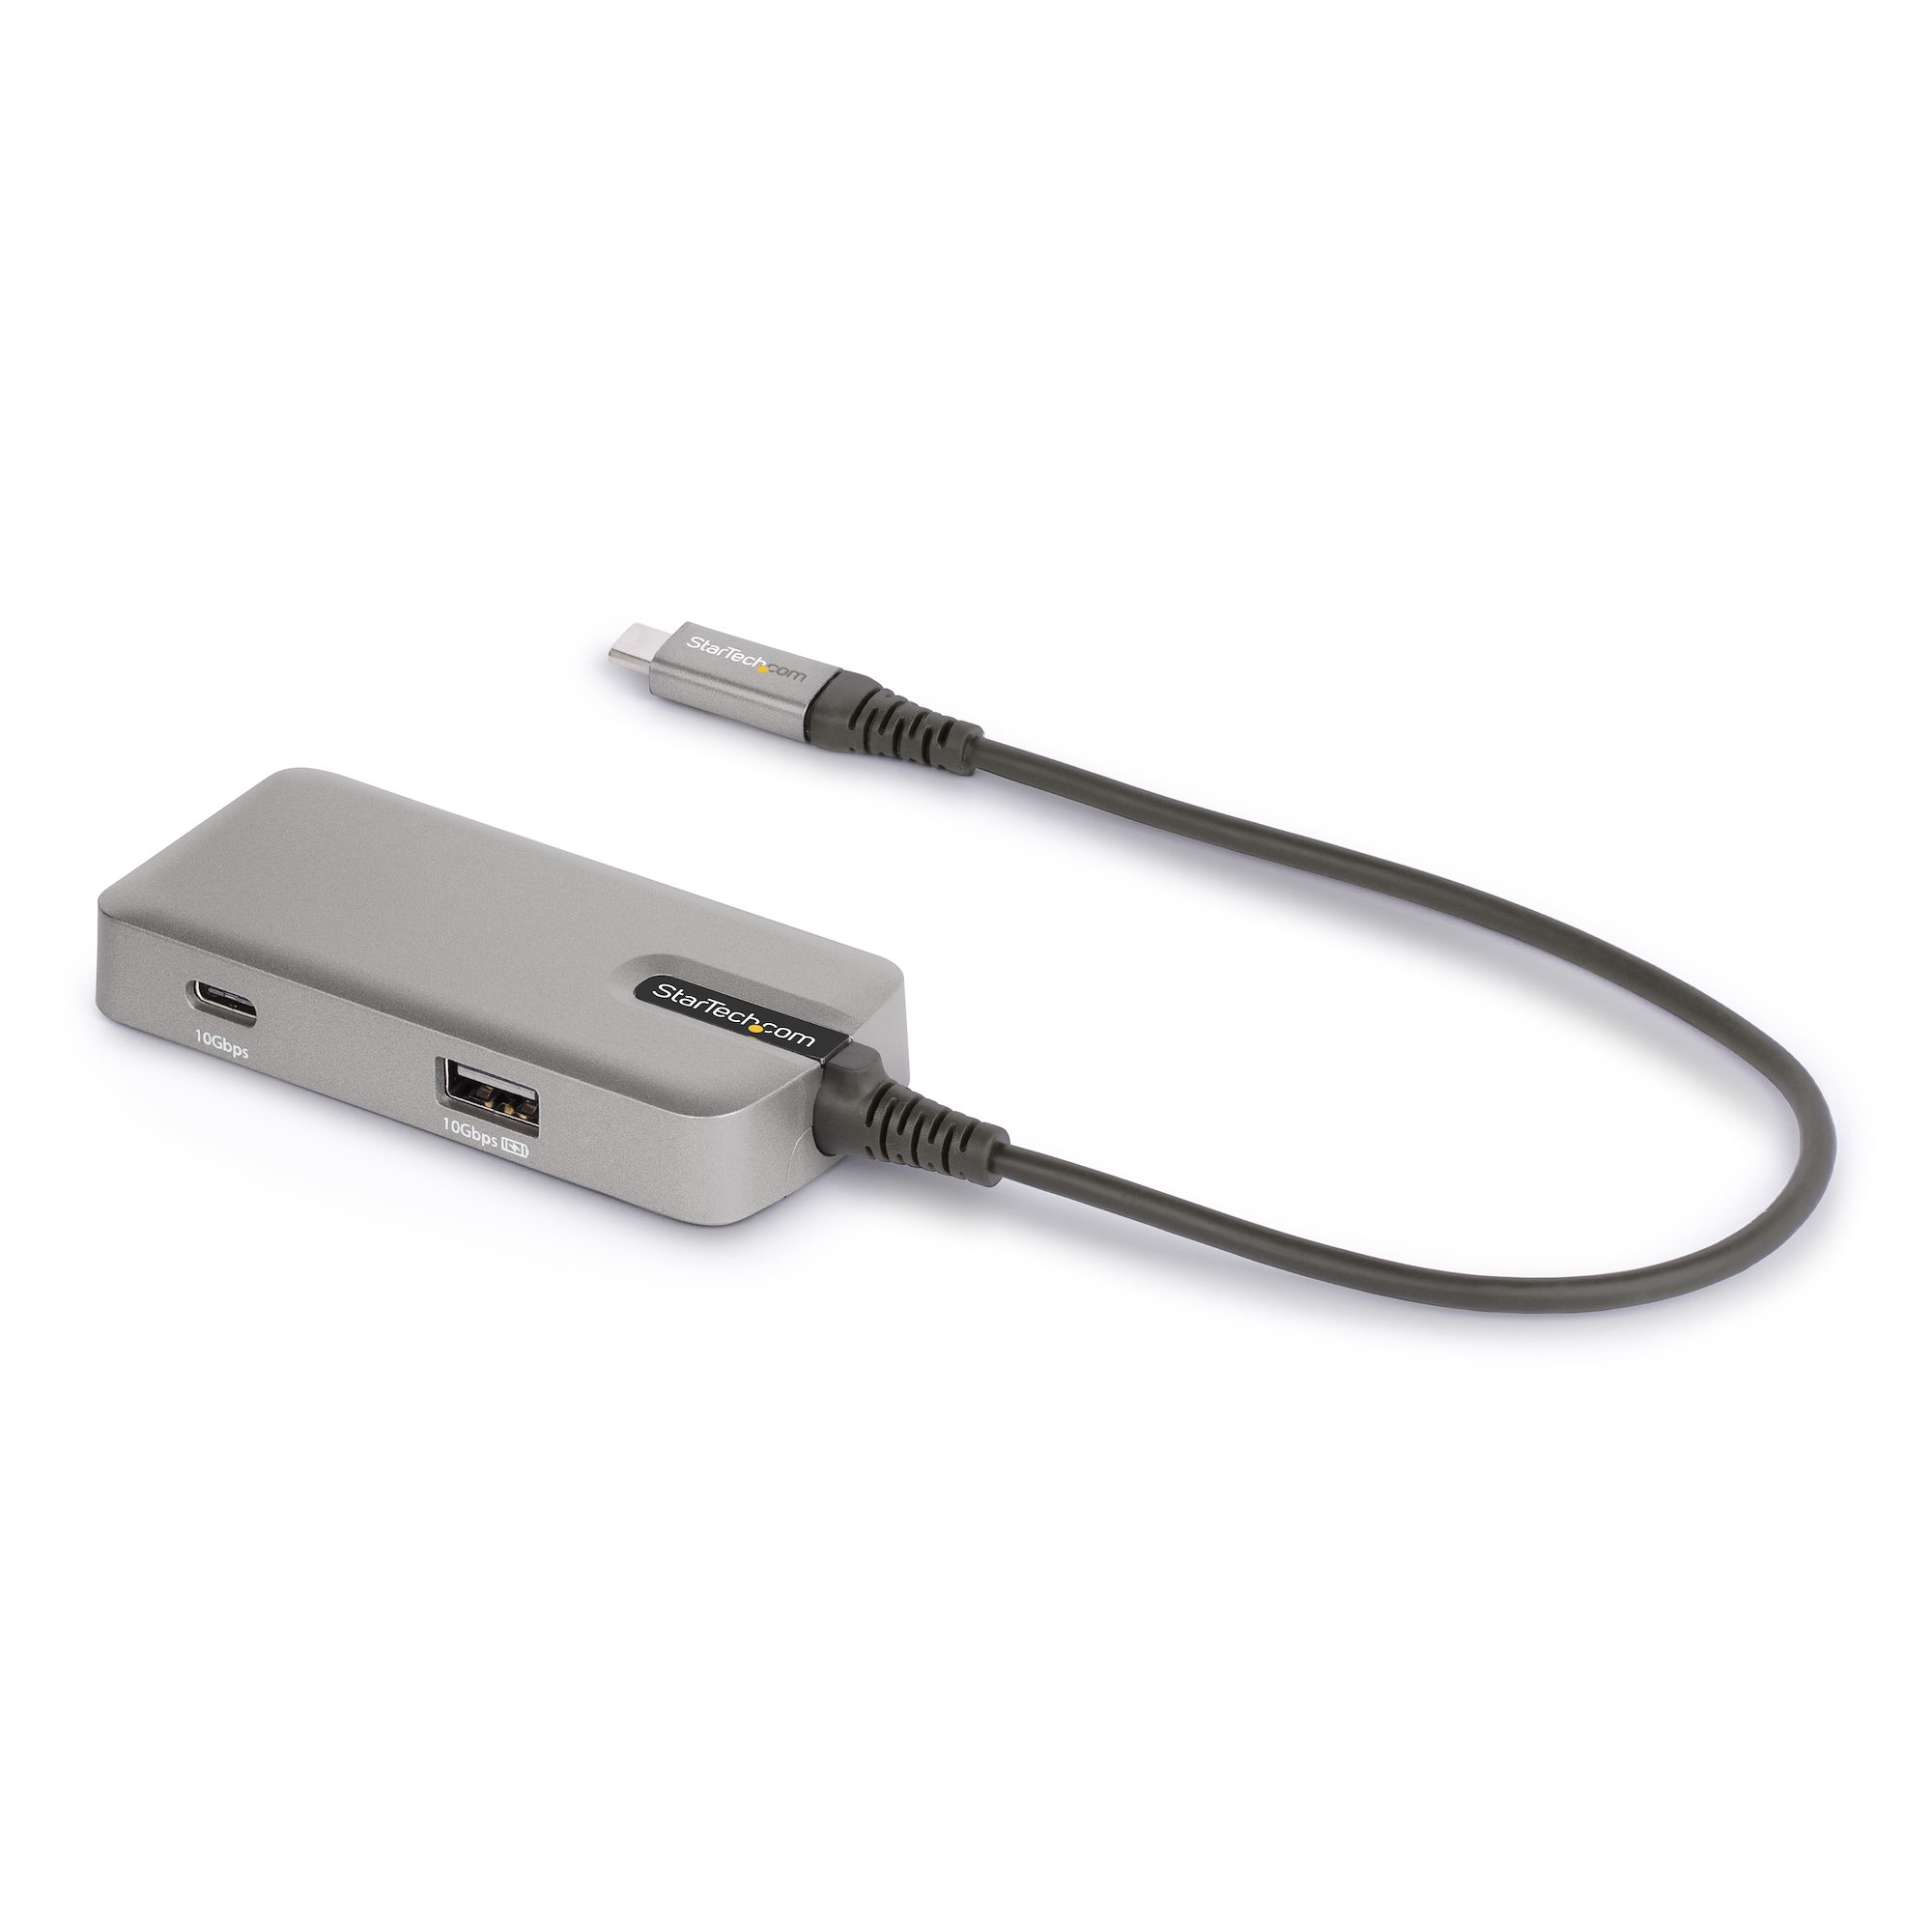 Adaptateur USB C vers HDMI - Vidéo 4K 60Hz, HDR10 - Adaptateur Dongle USB  vers HDMI 2.0b - USB Type-C DP Alt Mode vers Écrans/Affichage/TV HDMI 